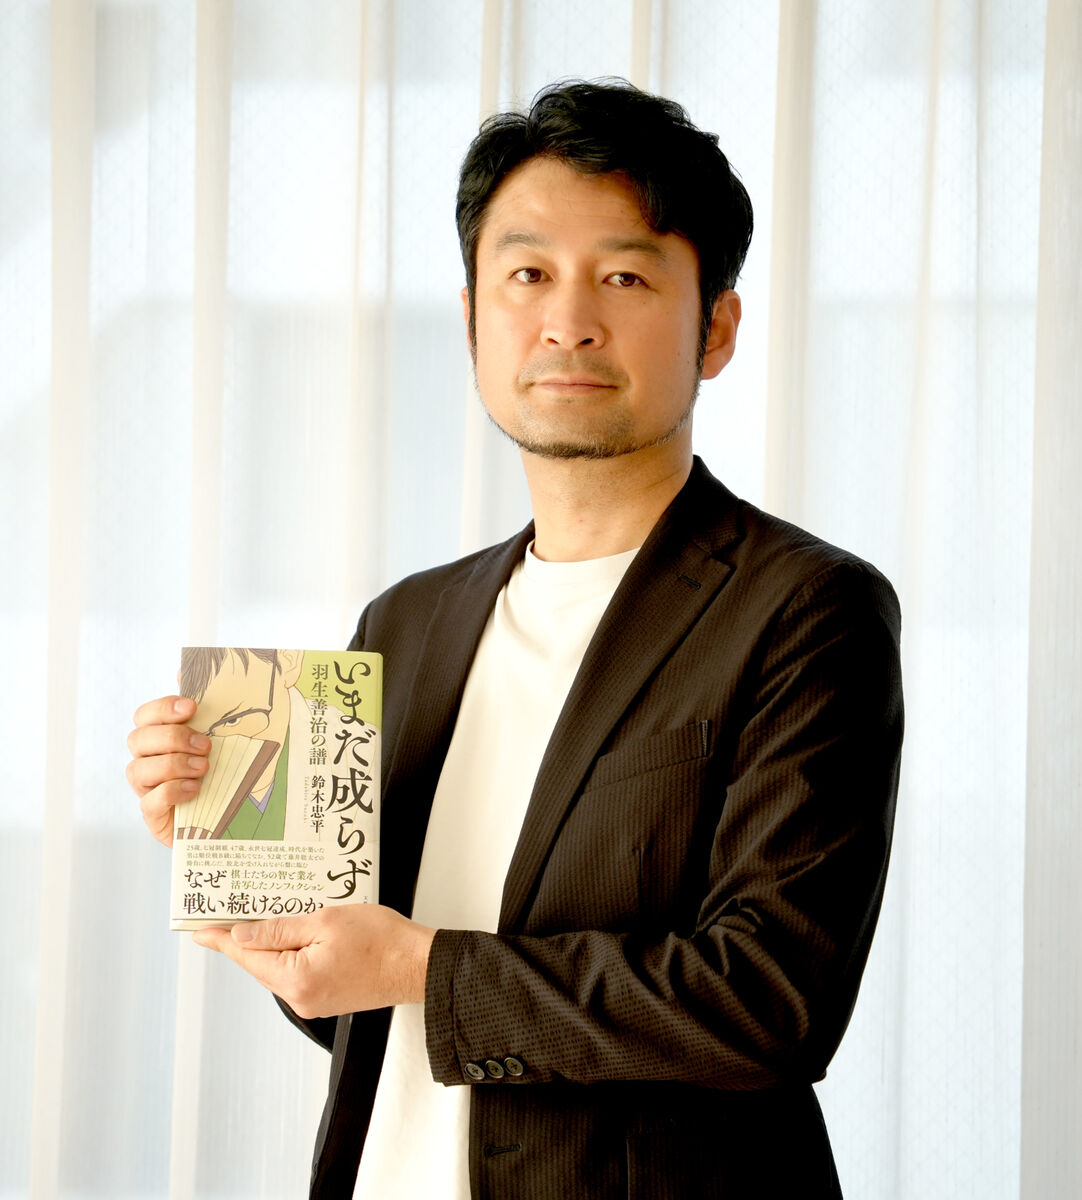 鈴木忠平さん、「読者に一番近い場所に立って描いた」…「嫌われた監督」の作者が次に選んだテーマは将棋だった